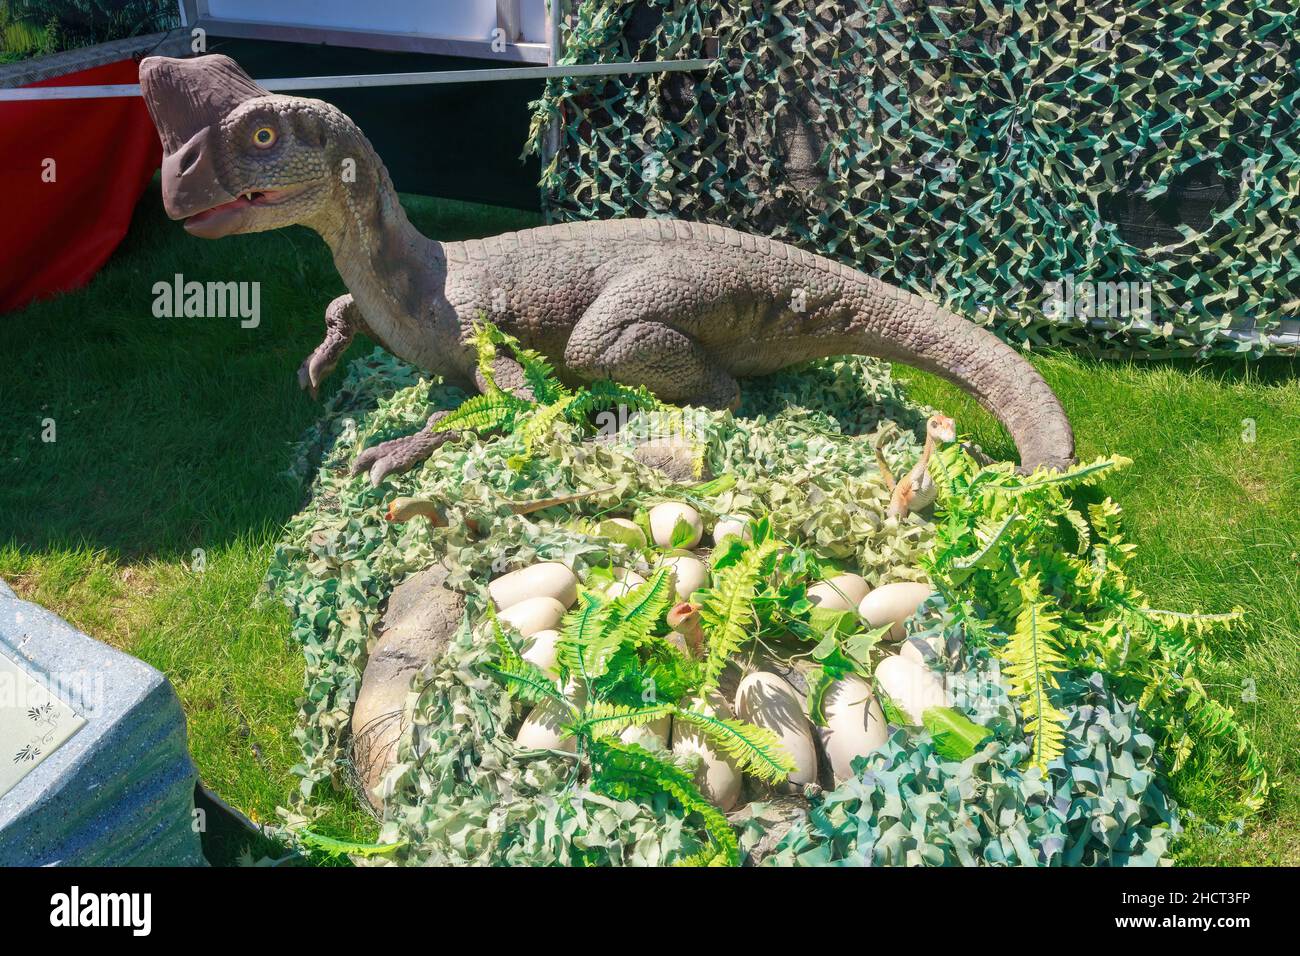 Un modèle d'Oviraptor, un petit dinosaure de la période du Crétacé, assis sur un nid plein d'oeufs Banque D'Images